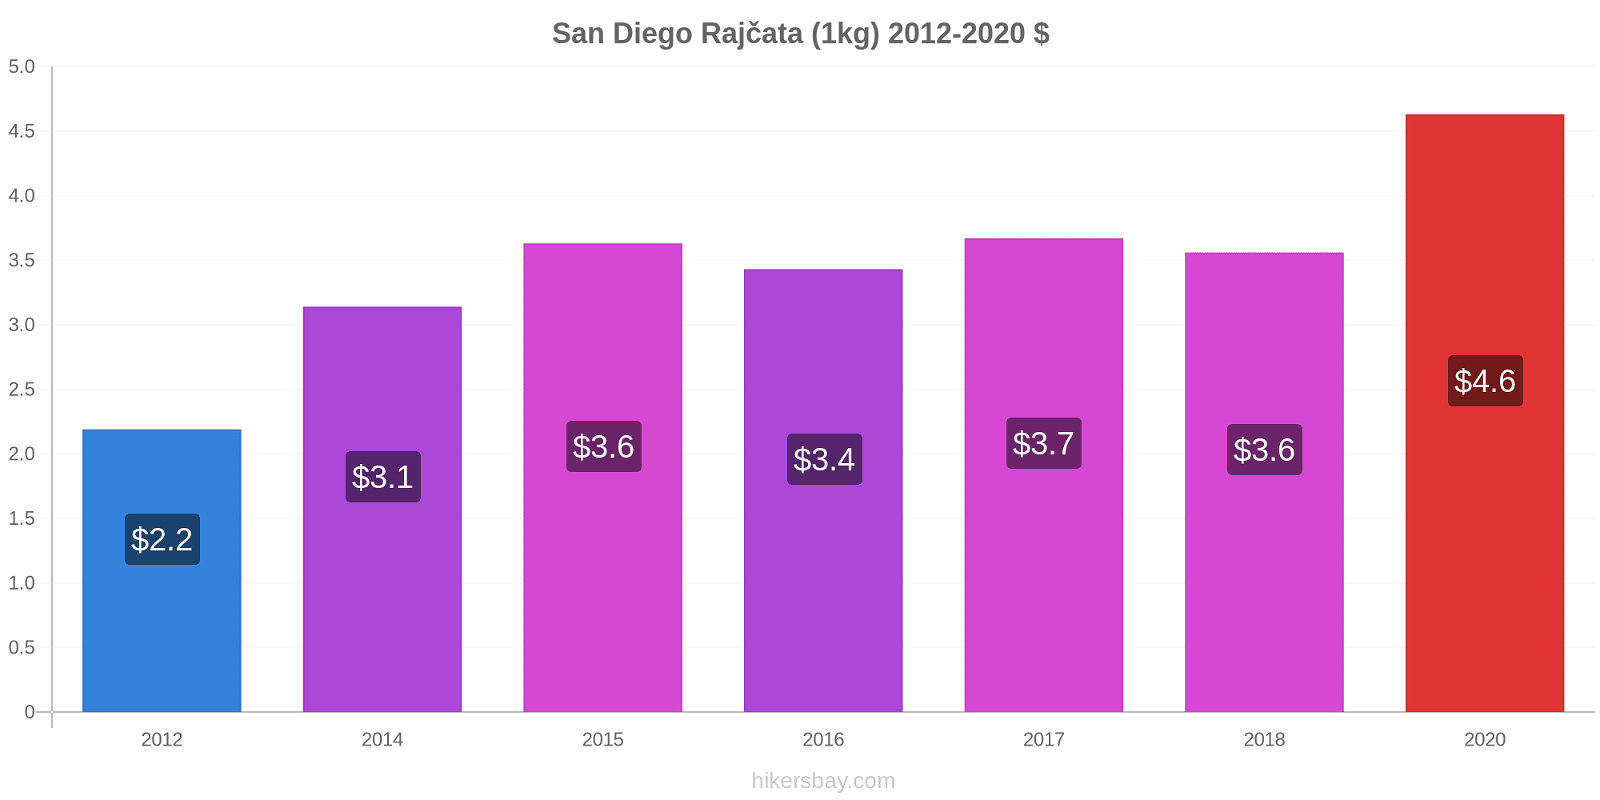 San Diego změny cen Rajčata (1kg) hikersbay.com